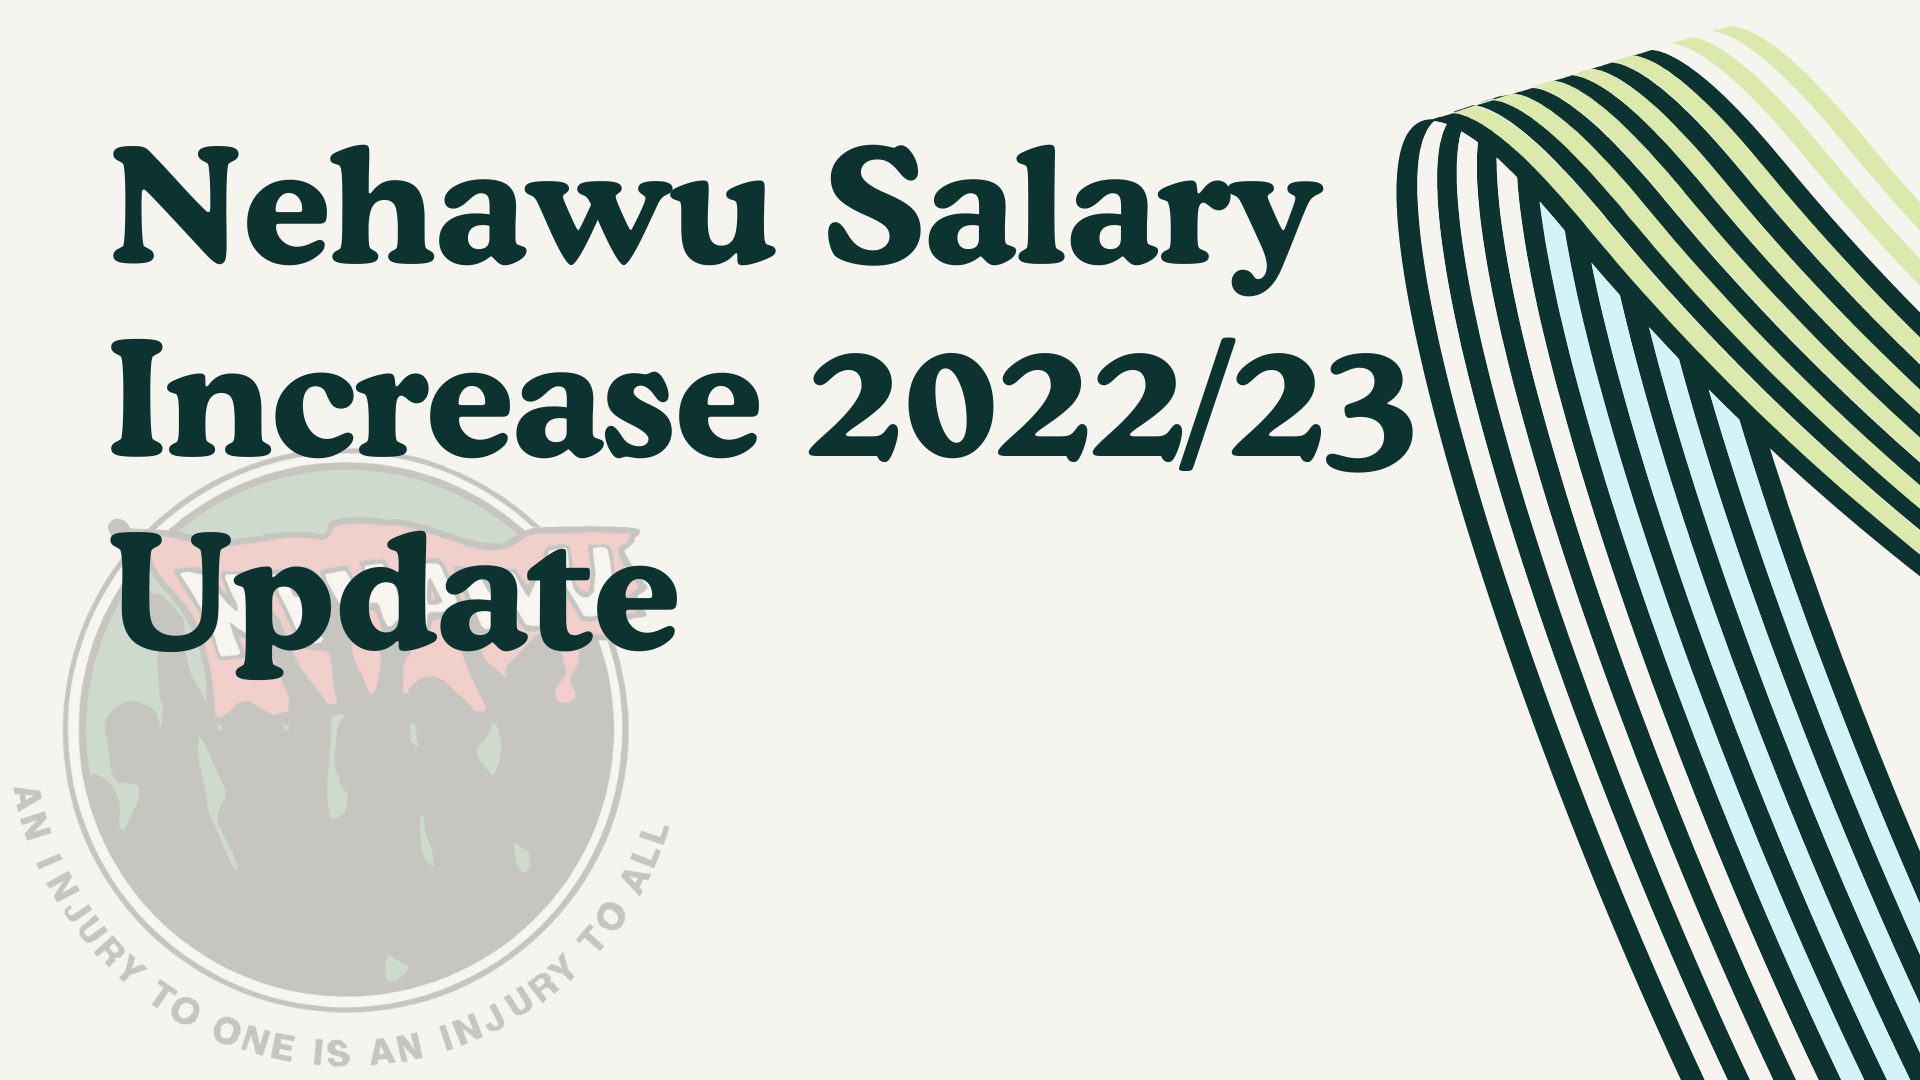 Nehawu Salary Increase